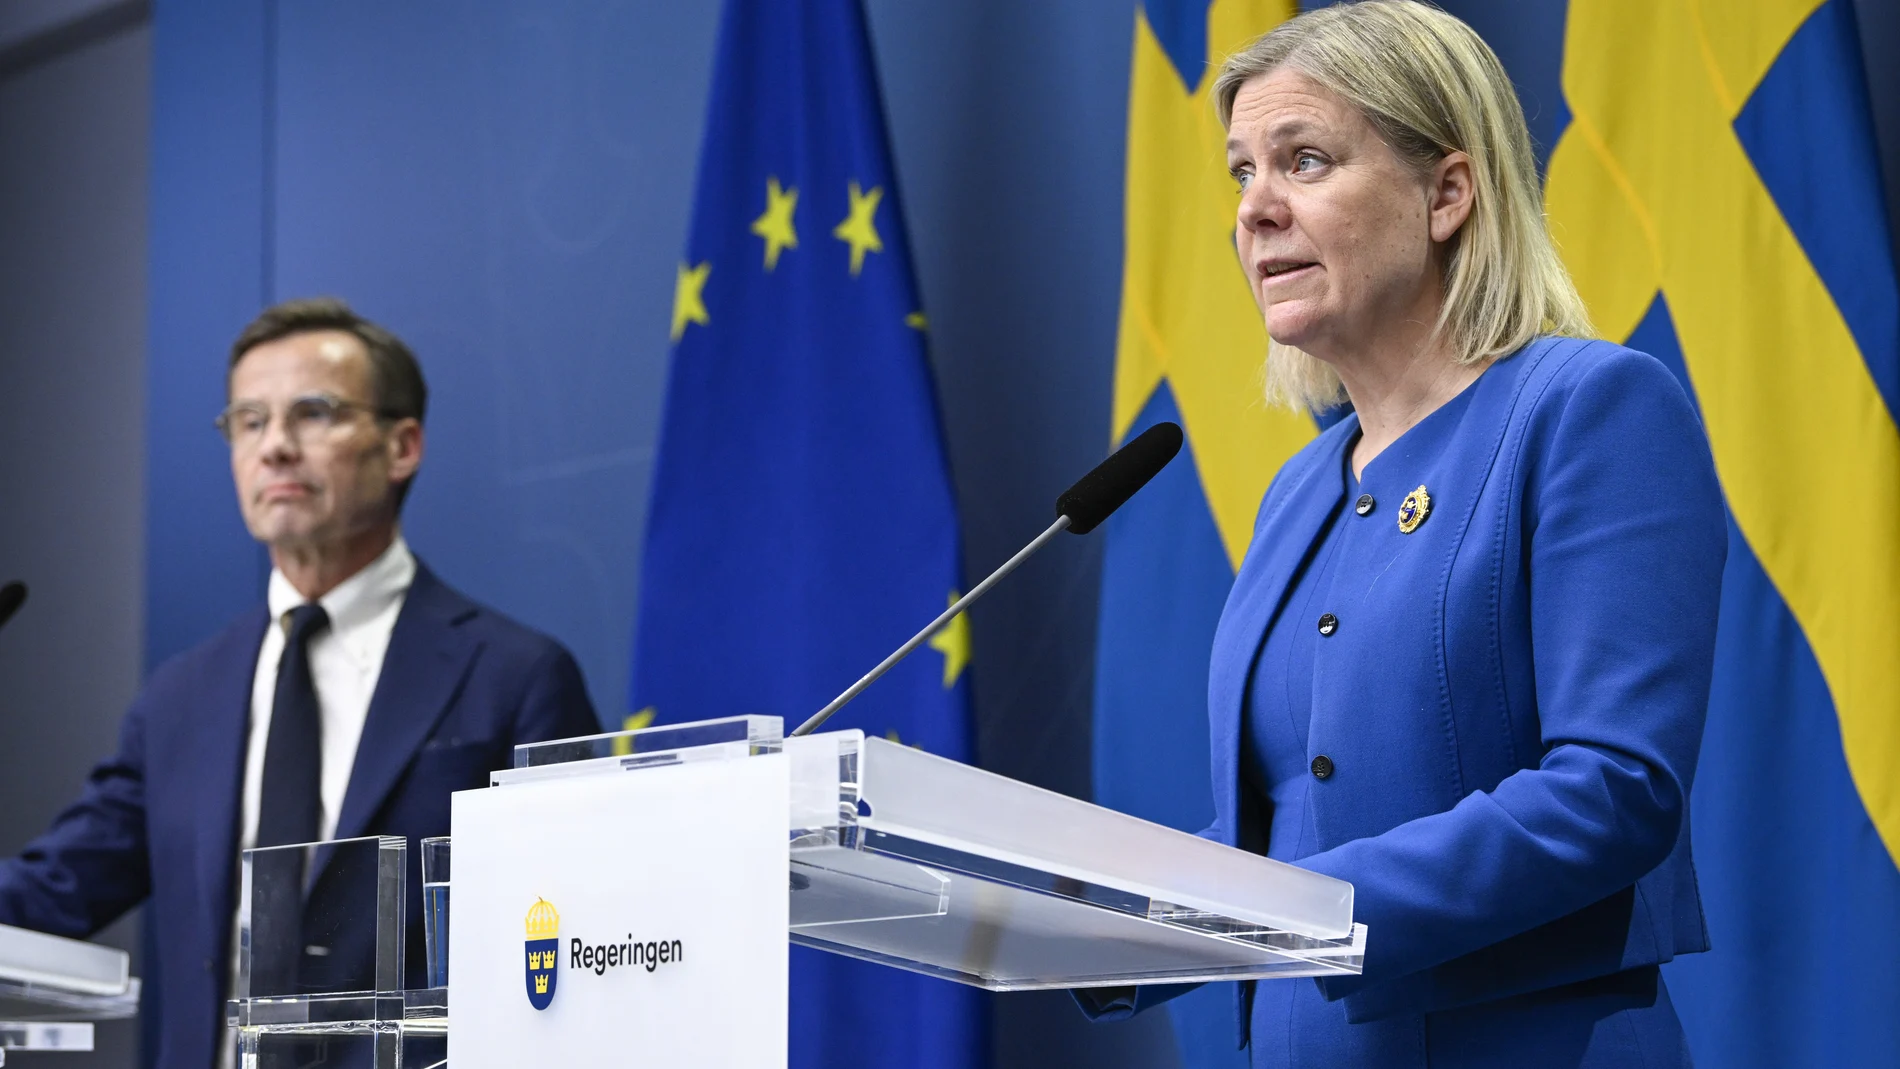 La primera ministra sueca, la socialdemócrata Magdalena Andersson, comparece junto al líder de la oposición, el conservador Ulf Kristersson